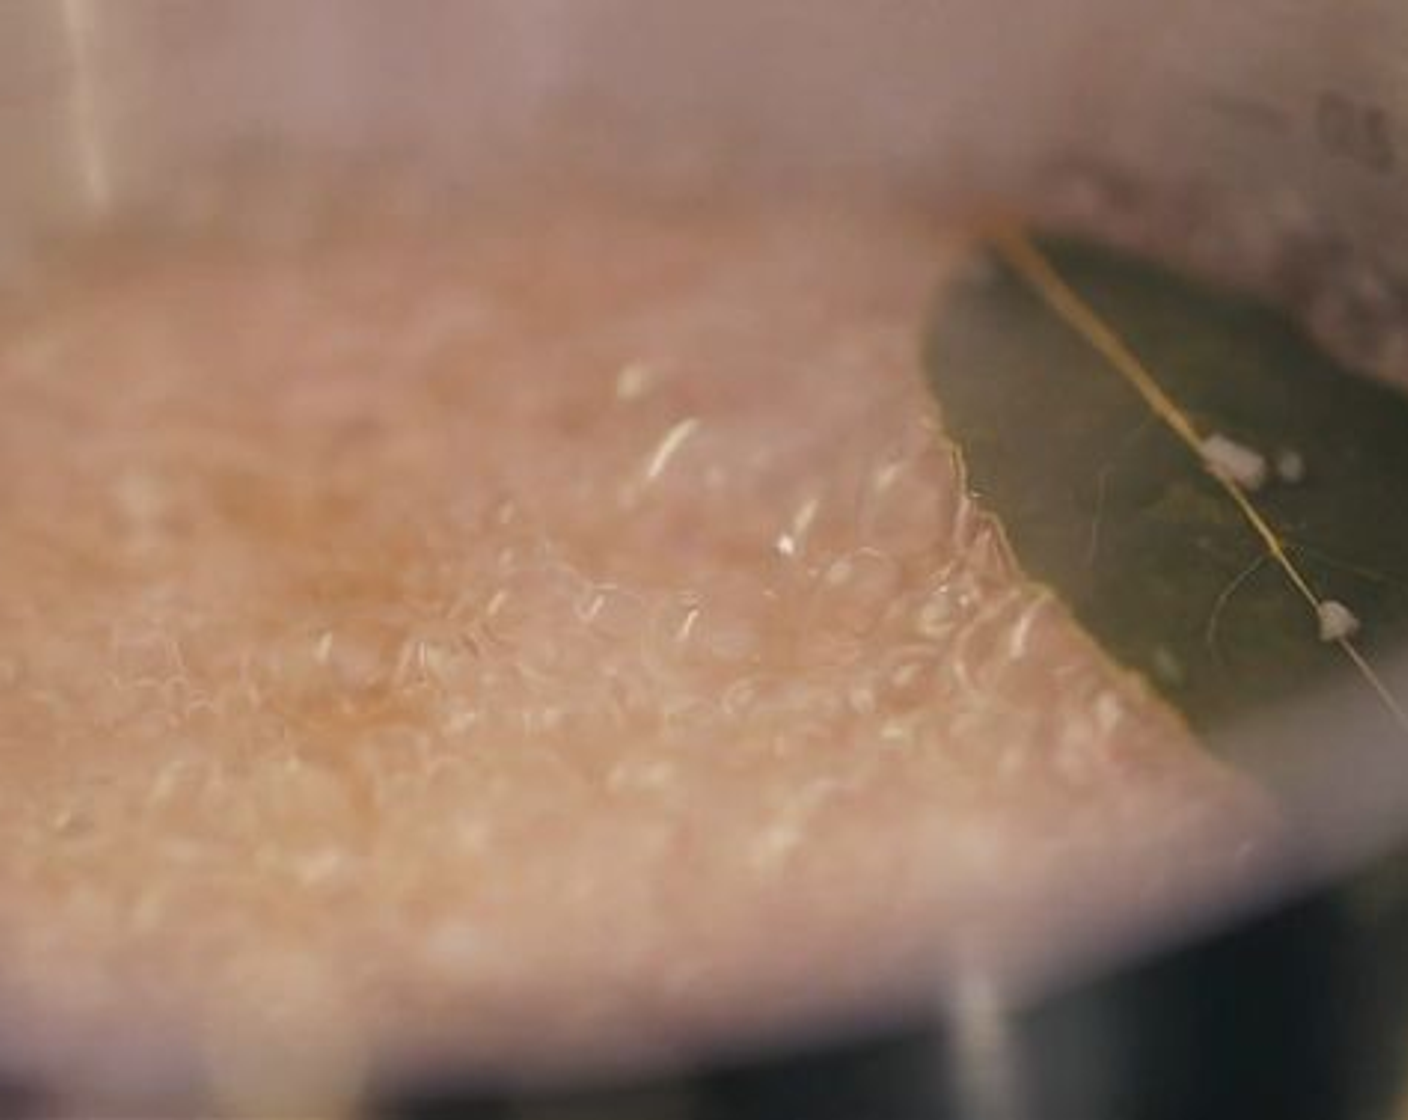 Schritt 7 Weissweinsauce: Schalotten (2) schälen und in kleine Würfel schneiden. Den Wein (200 ml) zusammen mit den Schalotten und dem Lorbeerblatt (1) in eine Pfanne geben und um die Hälfte einkochen lassen. Danach den Fond (400 ml) hinzufügen und alles zusammen auf ca. 300 ml einkochen. Zum Schluss die Butter (4 Esslöffel) zugeben, Lorbeerblatt entfernen mit Salz (wenig) und Pfeffer (wenig) würzen und mit einem Stabmixer pürieren.